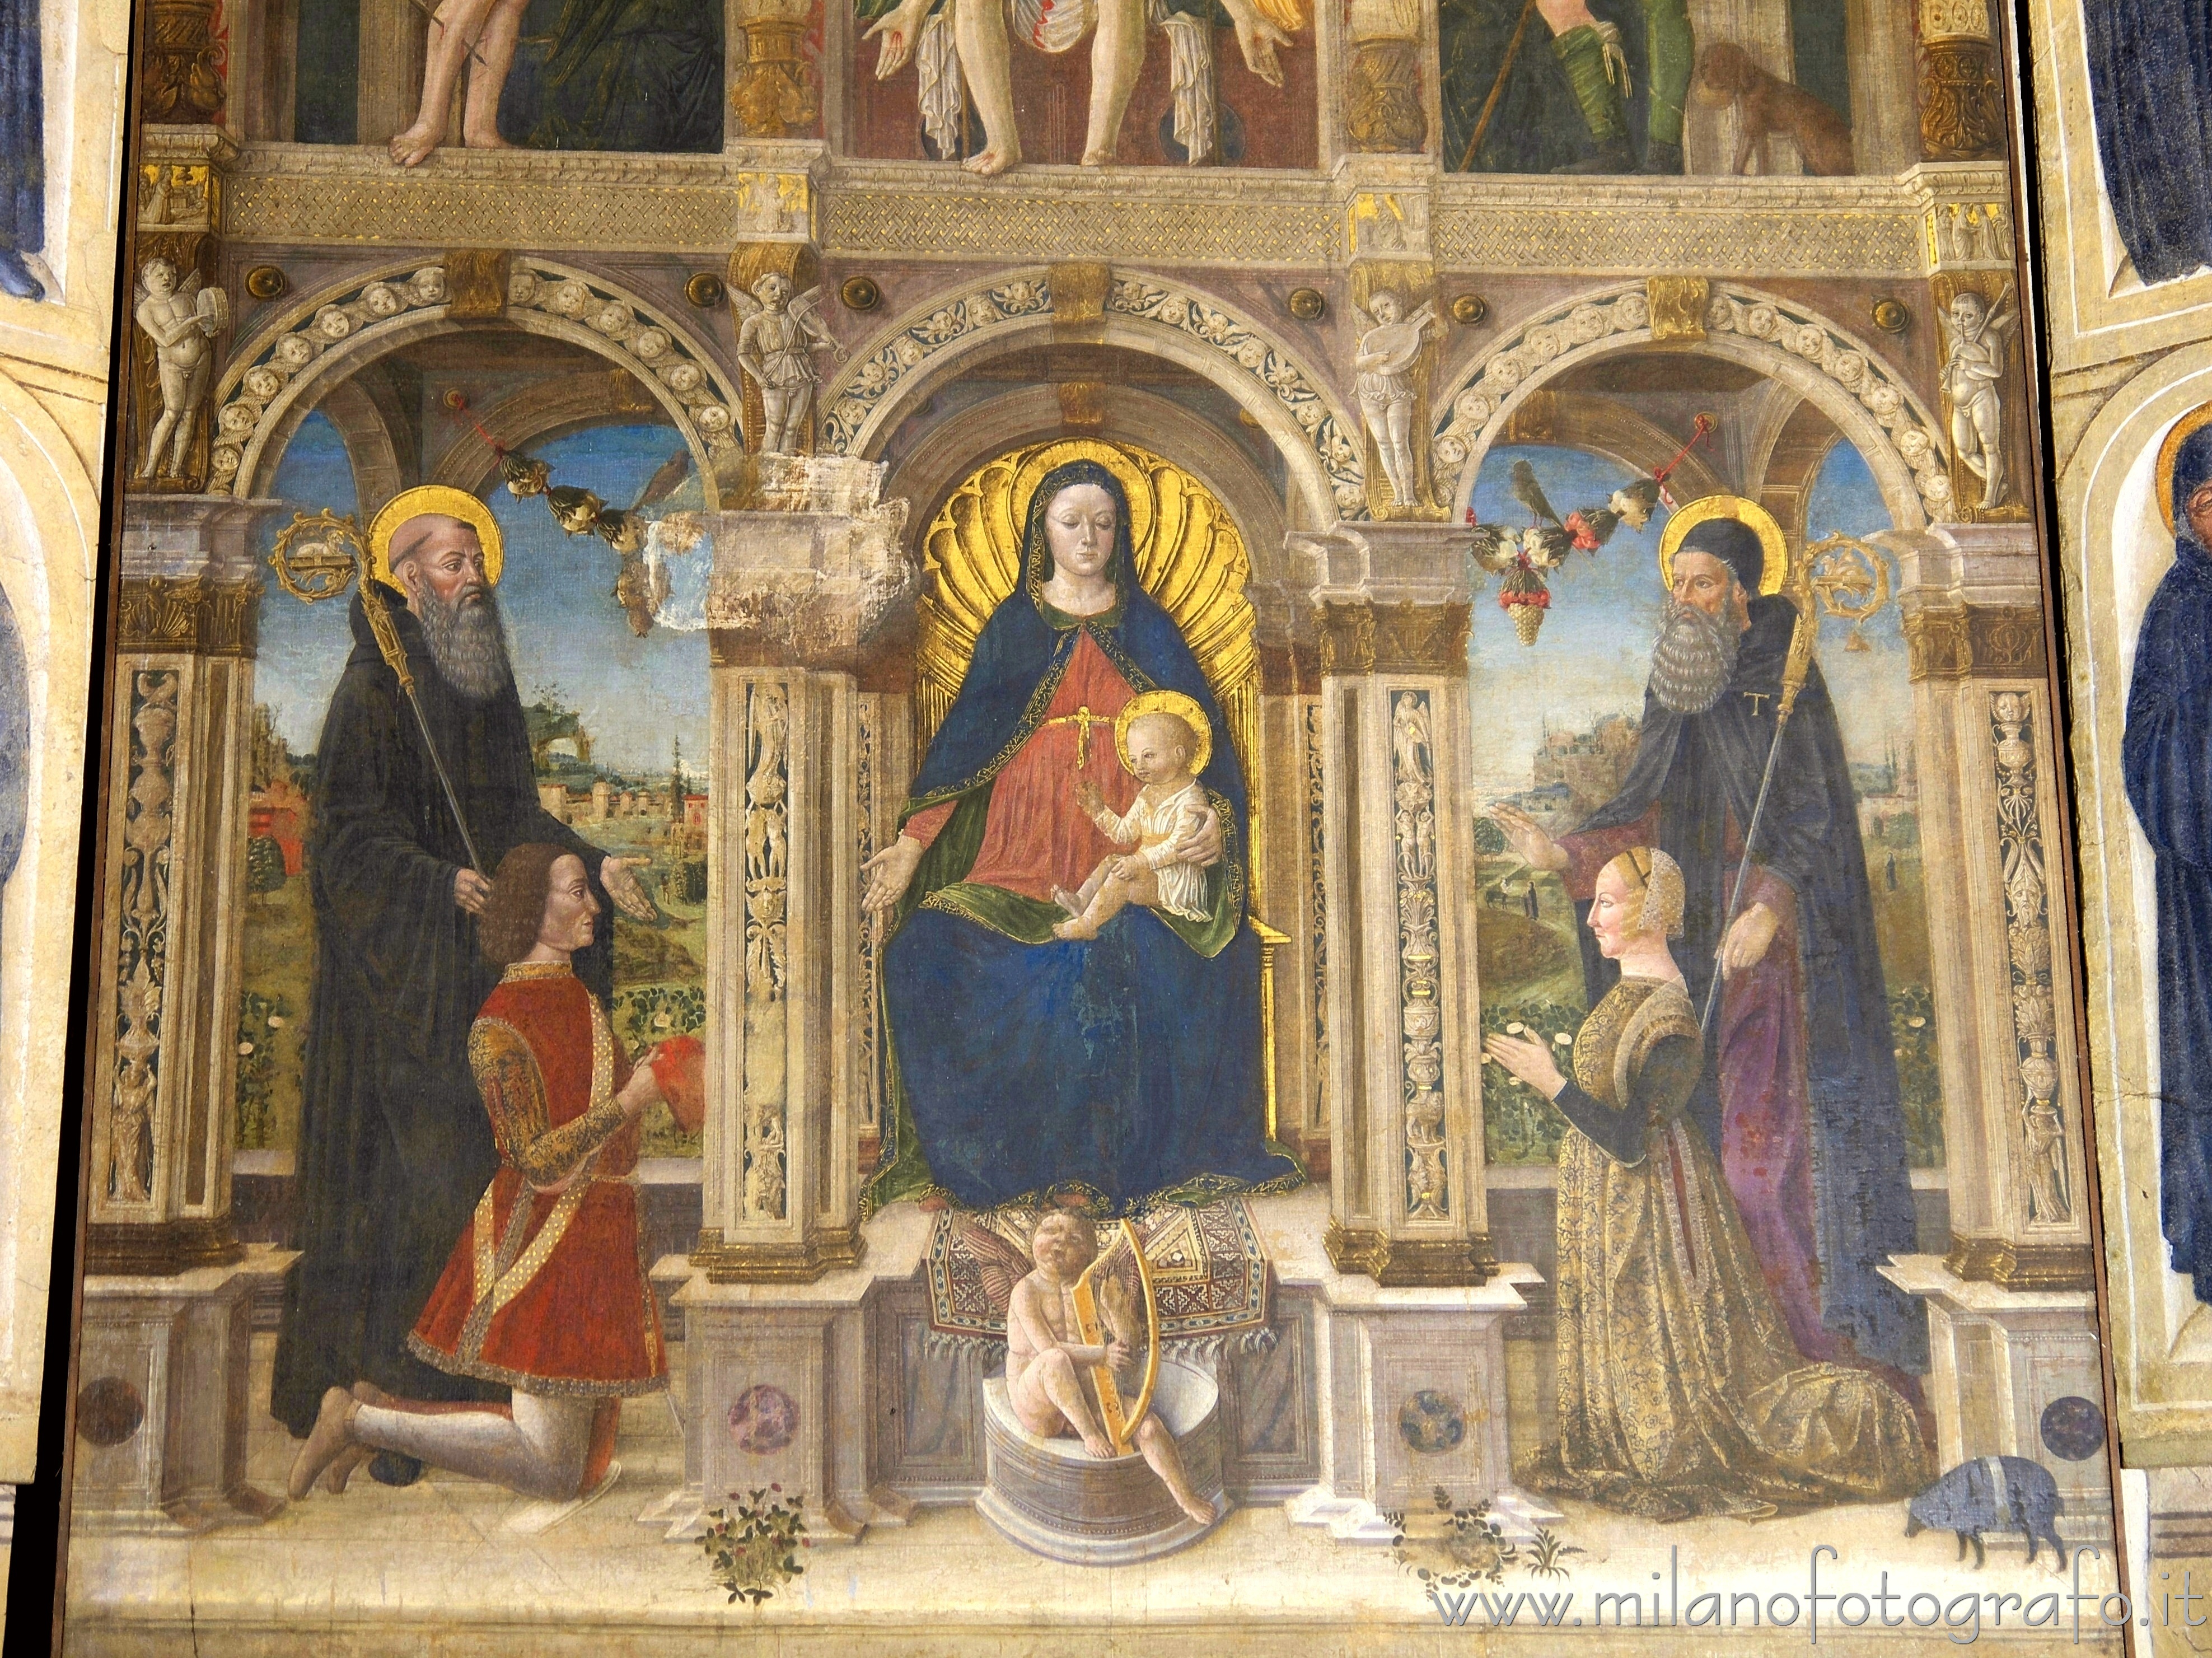 Milano: Dettaglio del Polittico del Montorfano nella Chiesa di San Pietro in Gessate - Milano